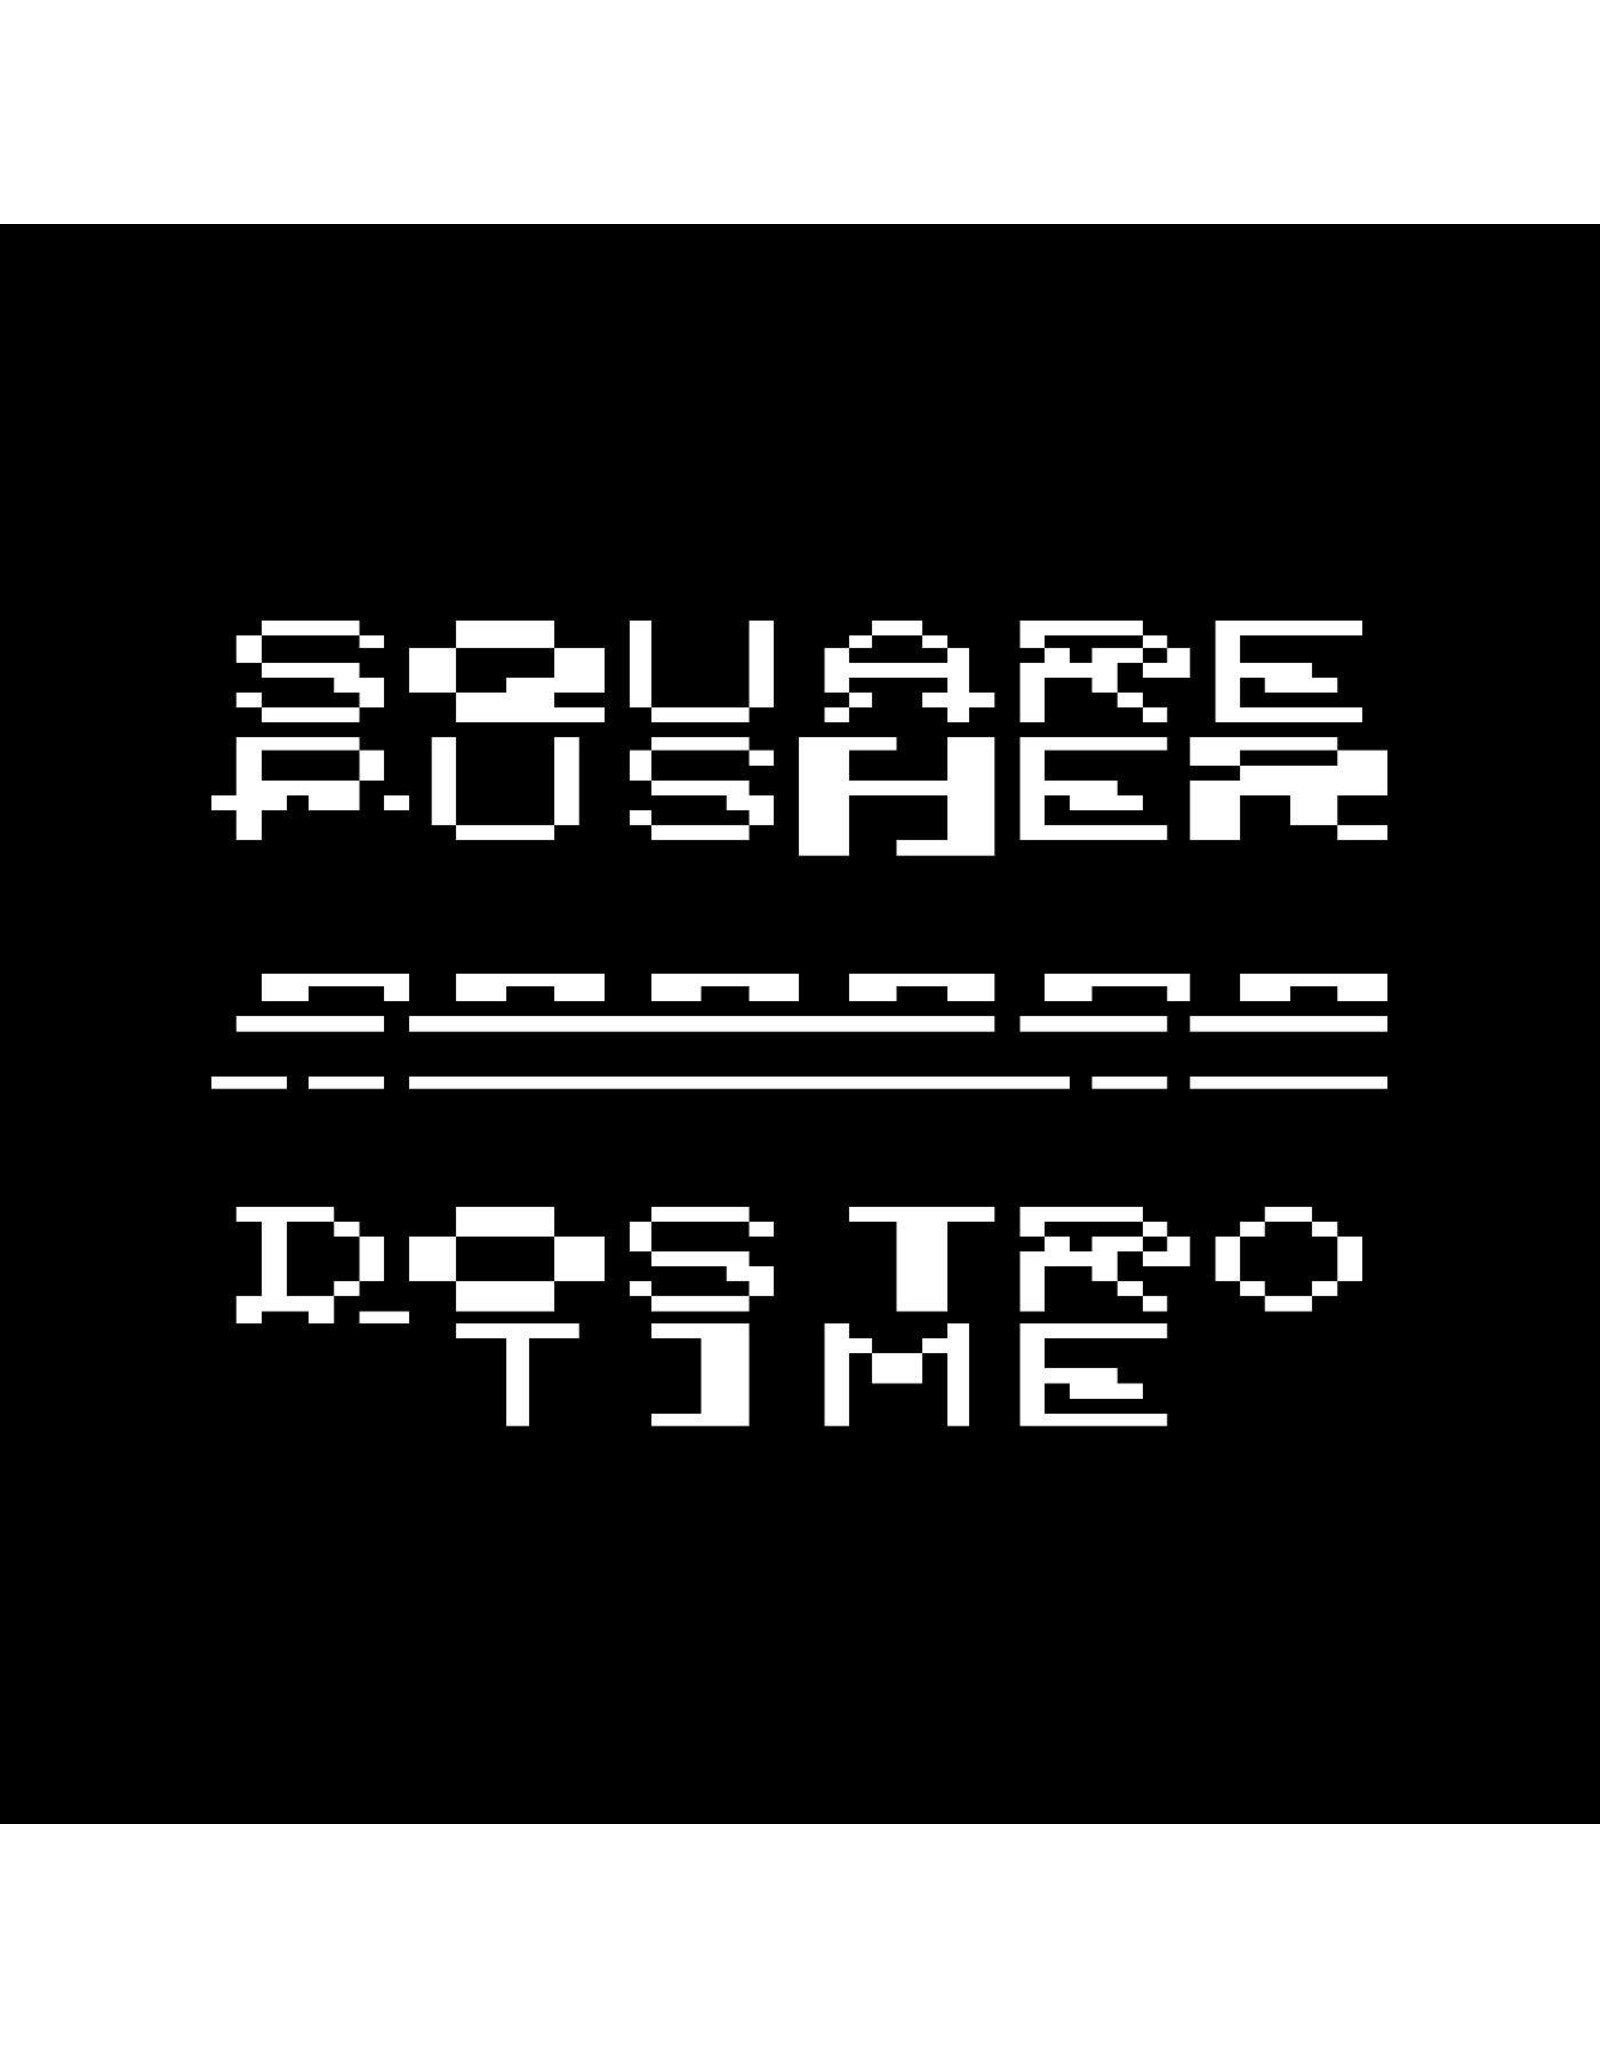 Warp Squarepusher: Dostrotime LP